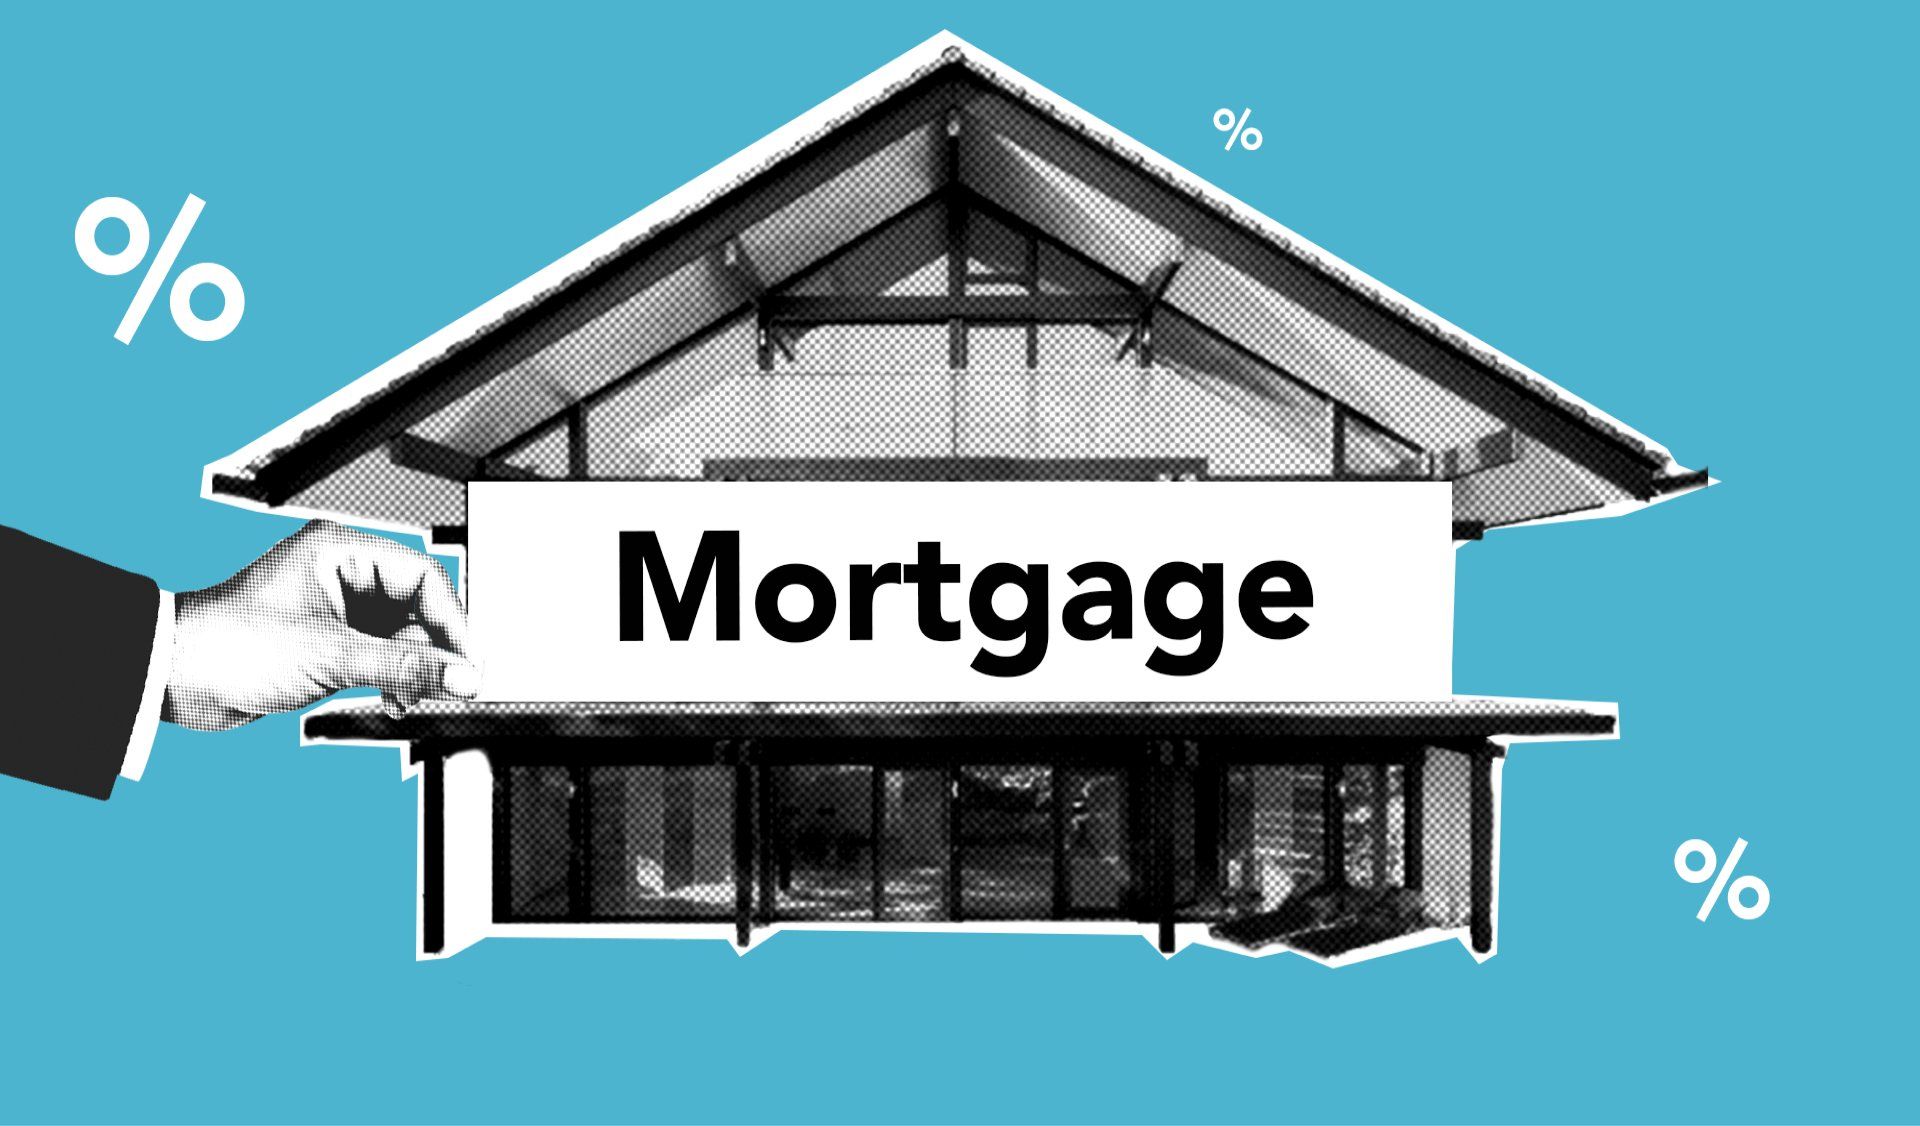 Private mortgage